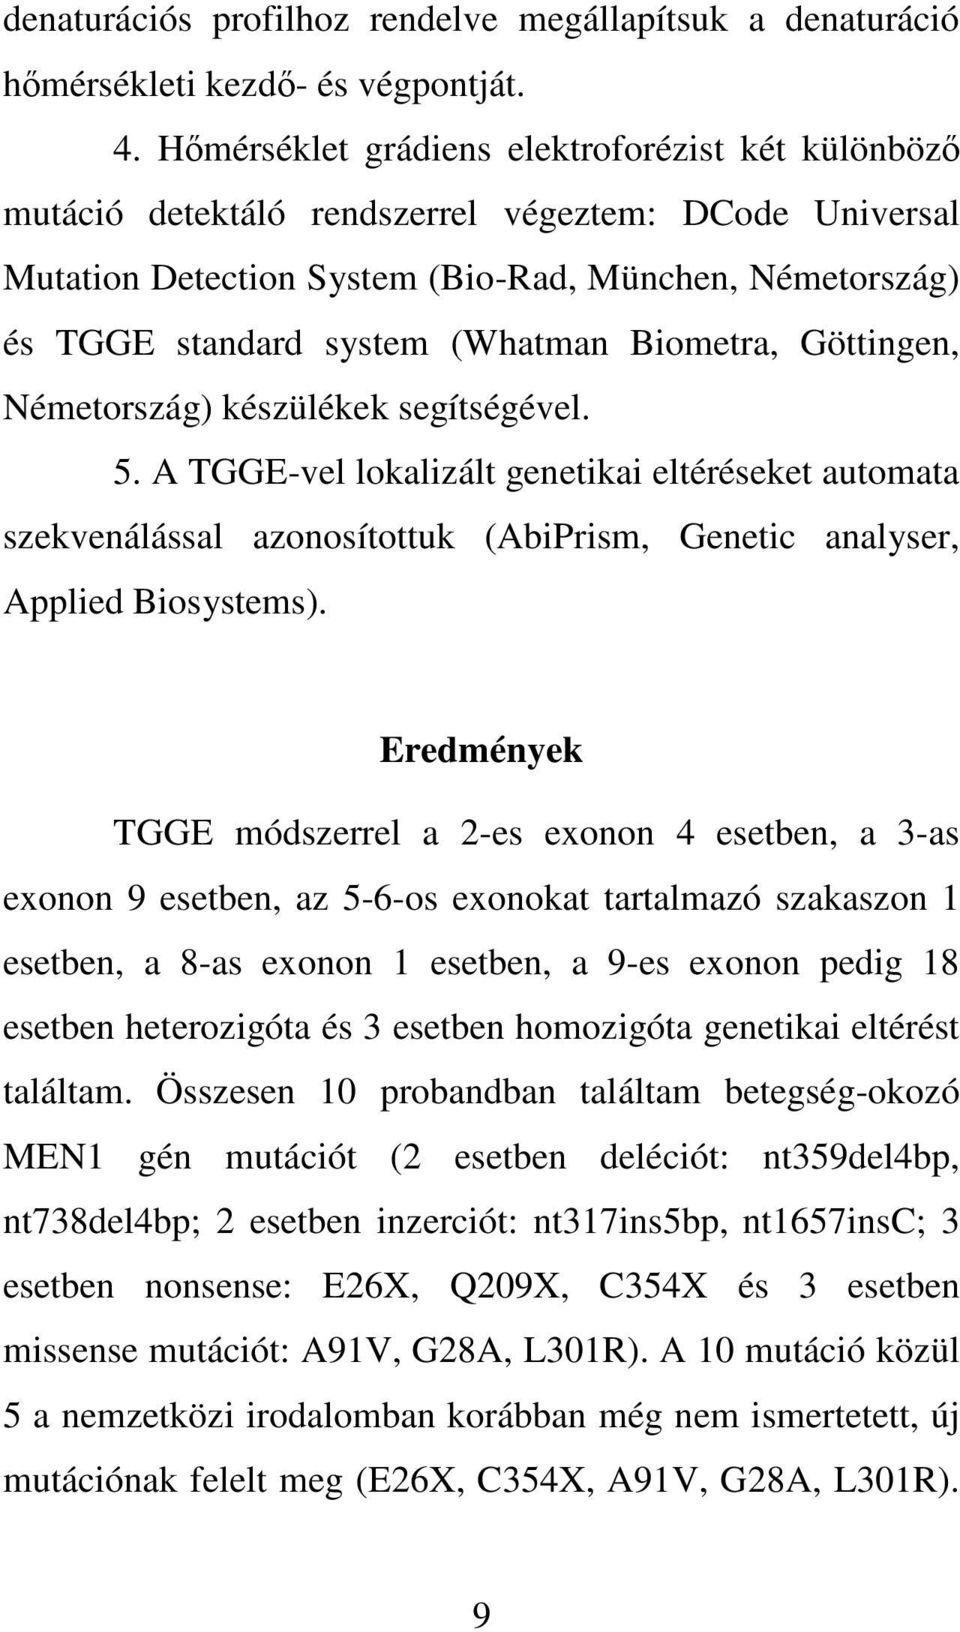 Biometra, Göttingen, Németország) készülékek segítségével. 5. A TGGE-vel lokalizált genetikai eltéréseket automata szekvenálással azonosítottuk (AbiPrism, Genetic analyser, Applied Biosystems).